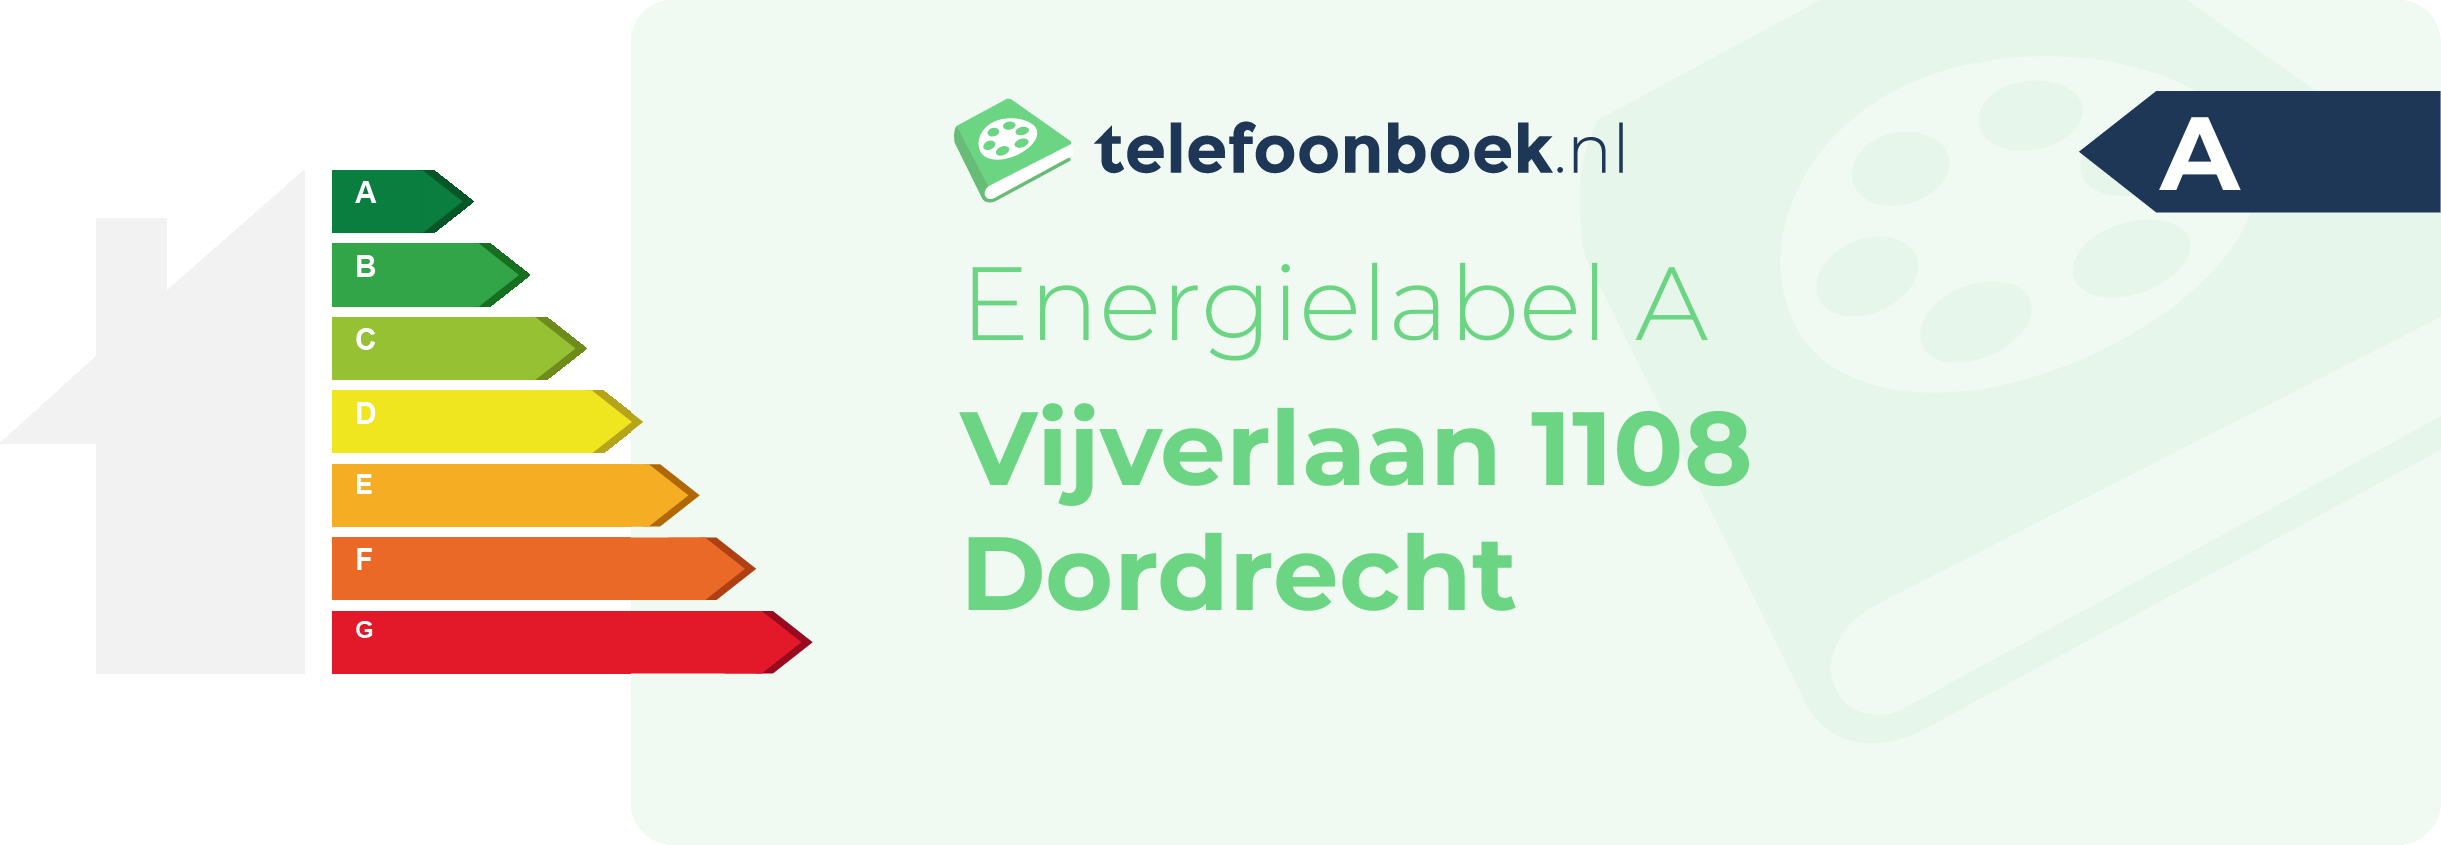 Energielabel Vijverlaan 1108 Dordrecht